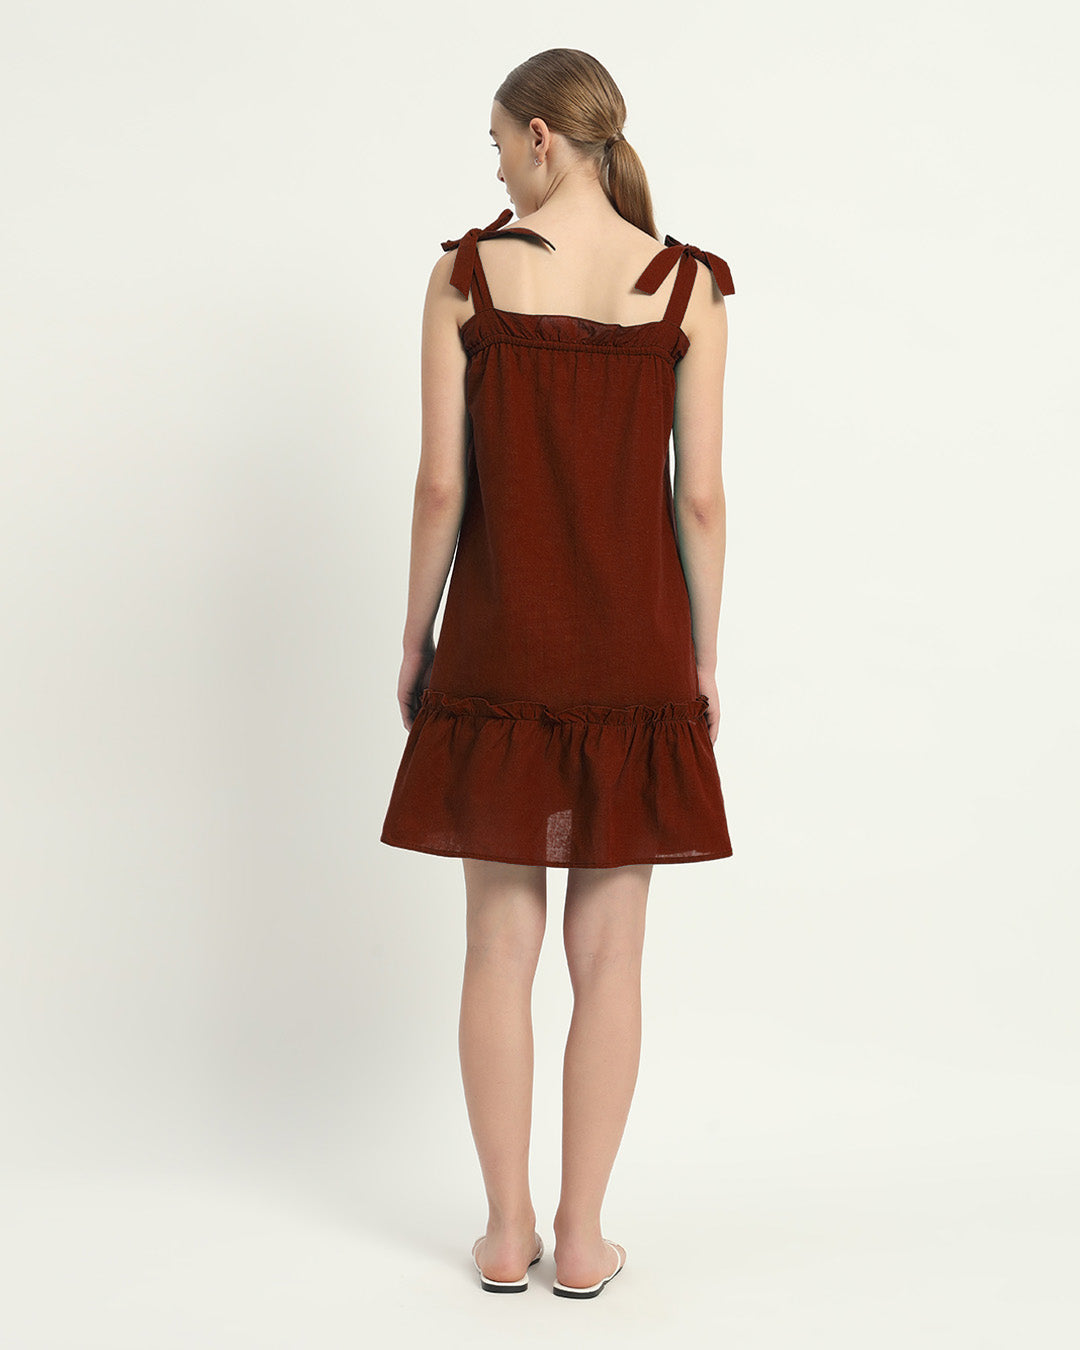 The Rouge Amalfi Cotton Dress